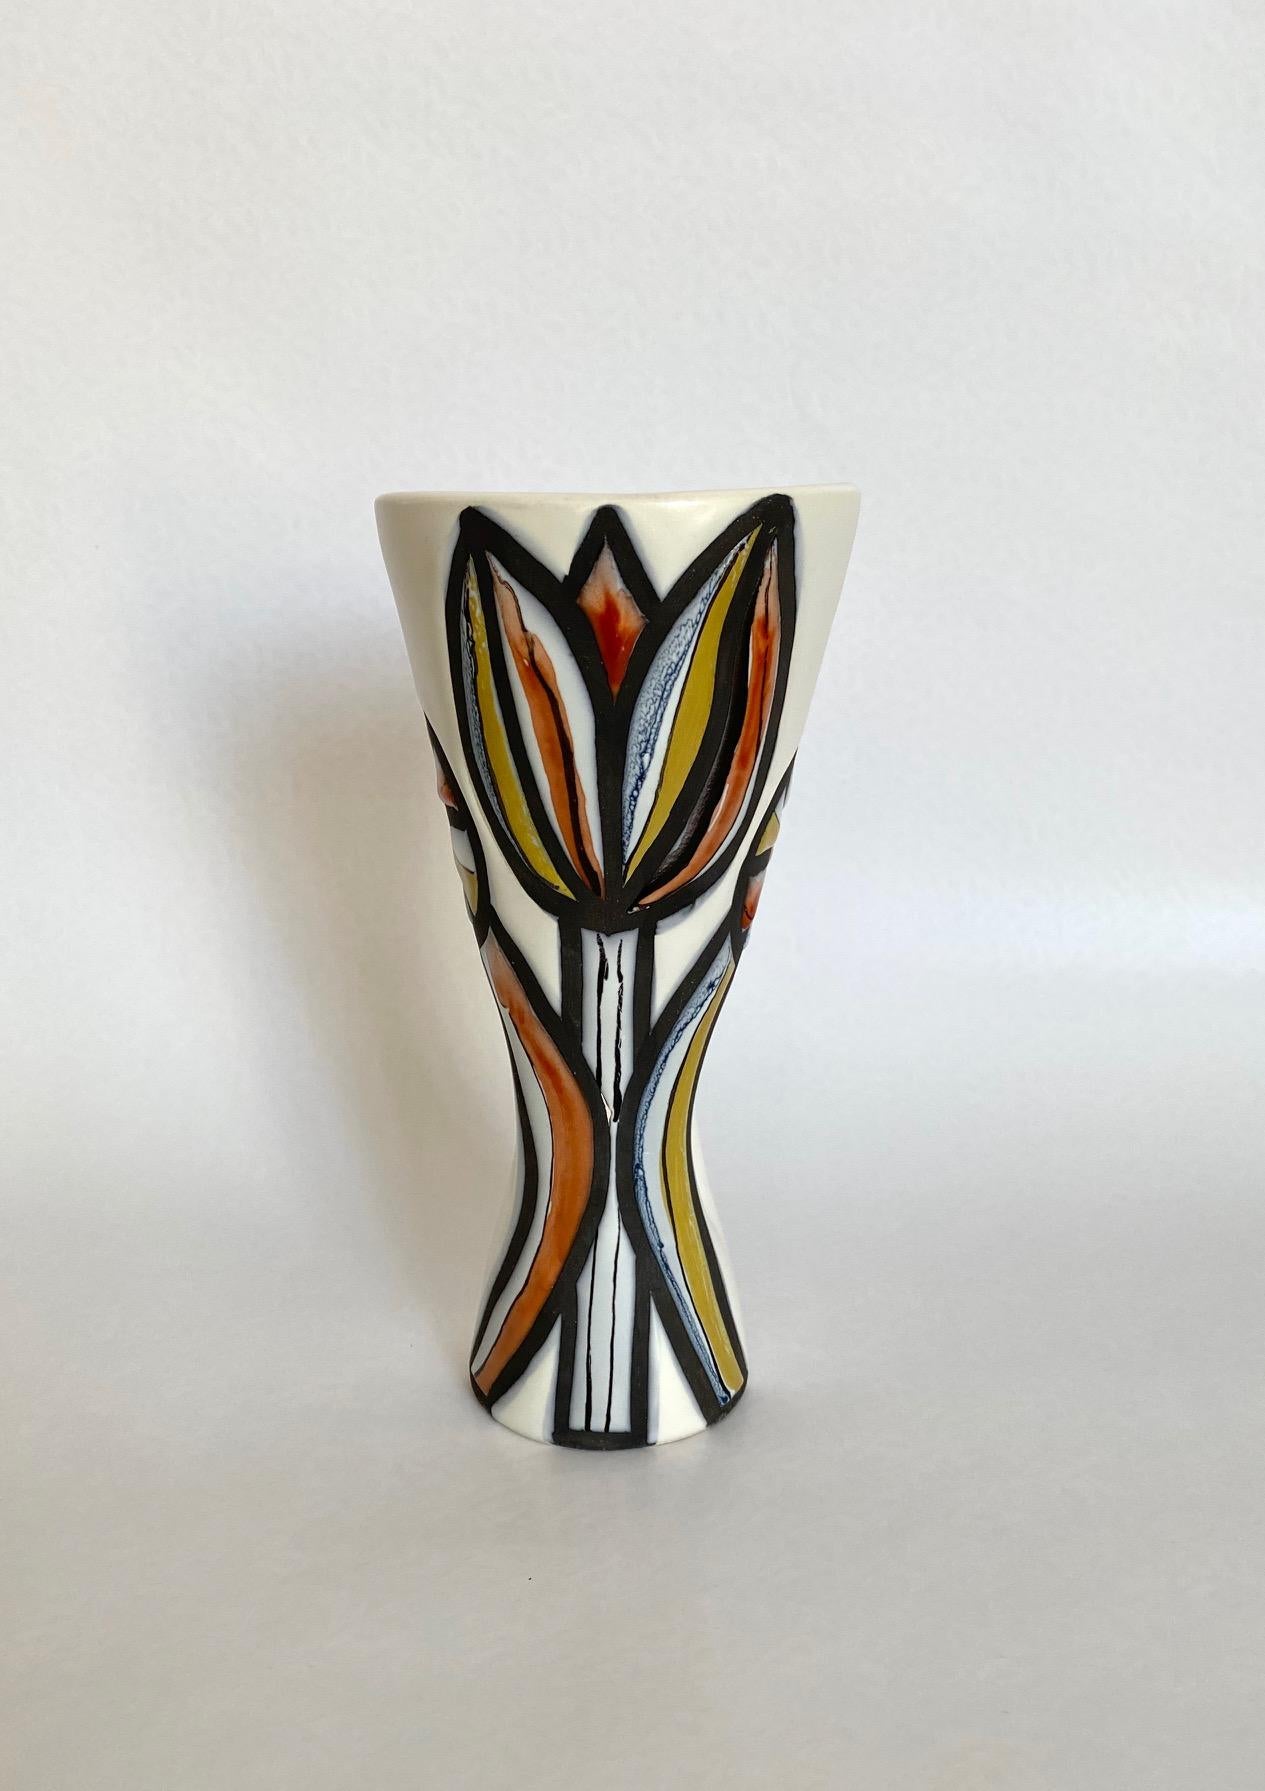 Small ceramic vase 